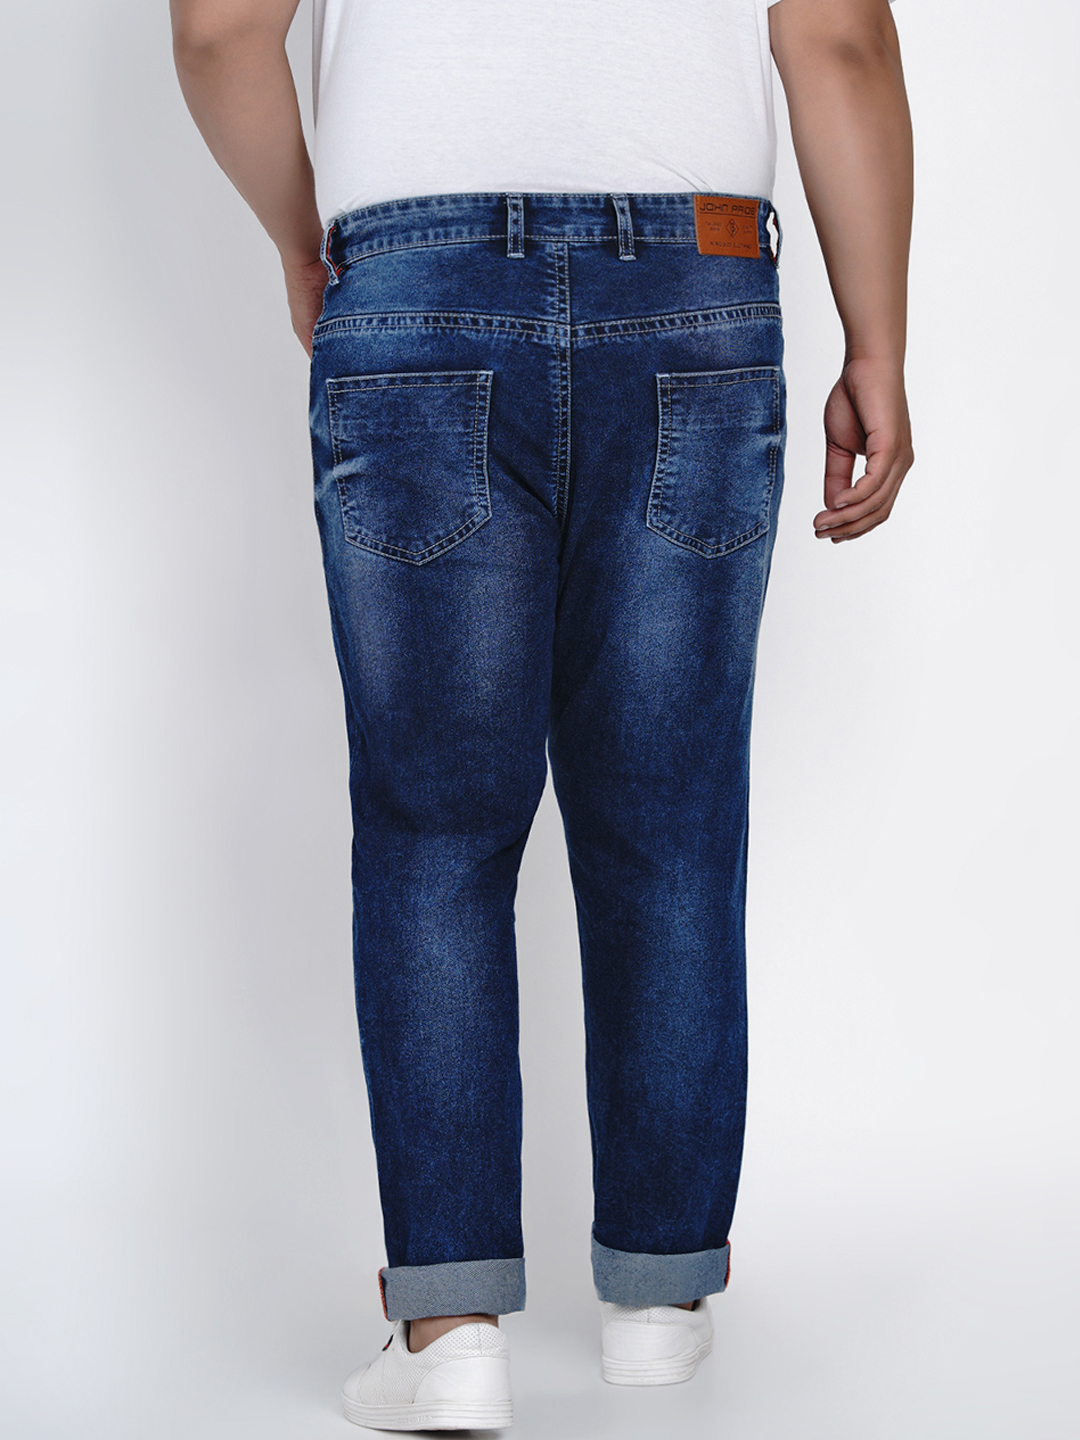 affordables/jeans/JPJ2012/jpj2012-5.jpg